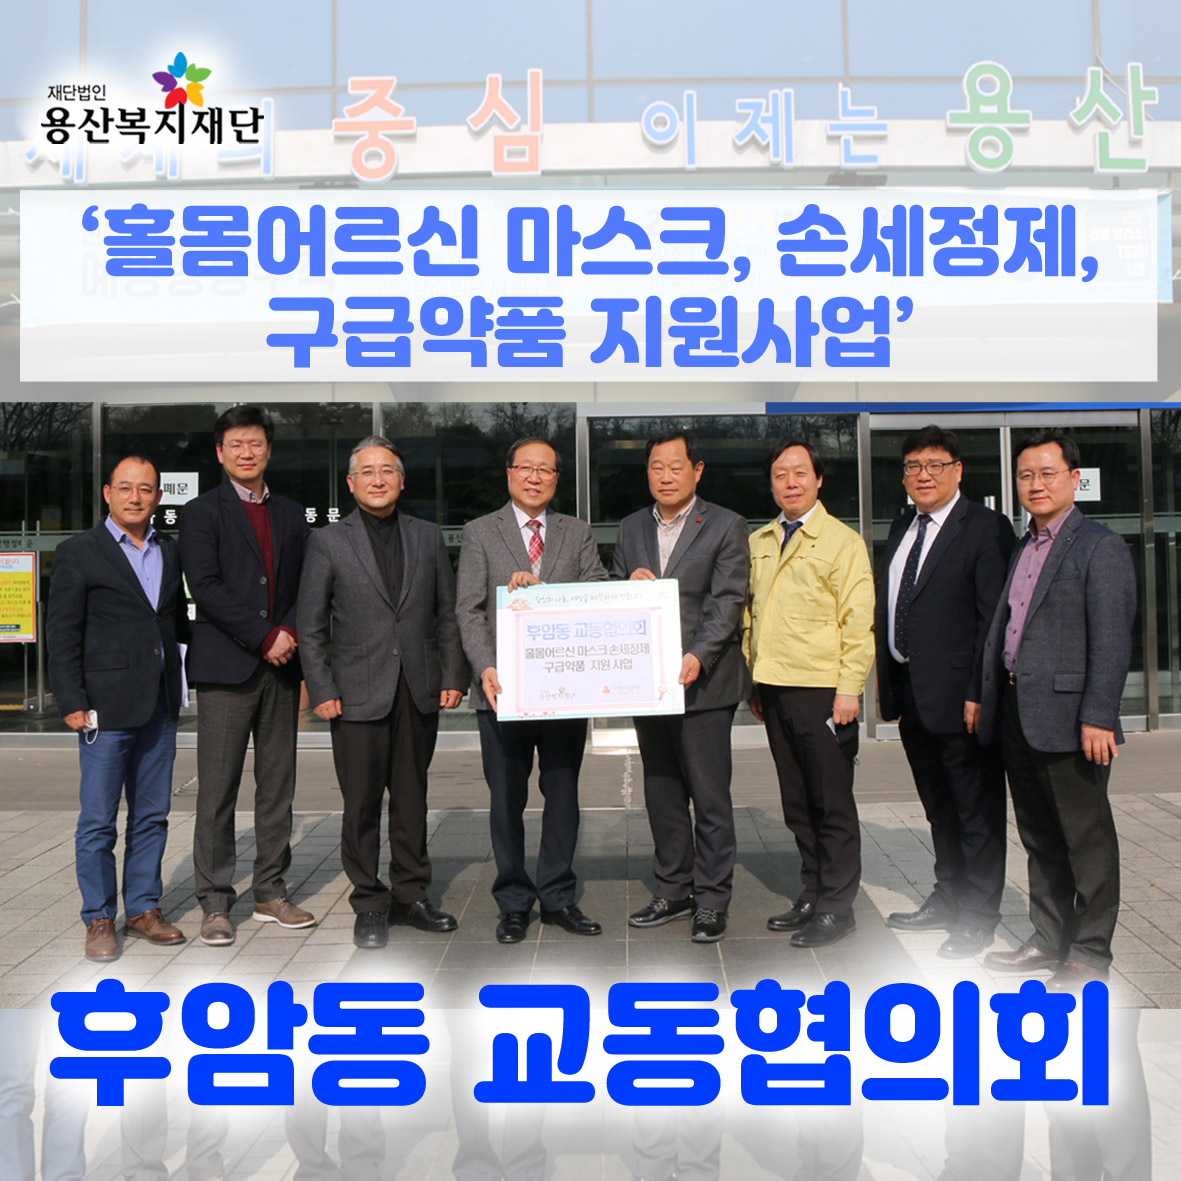 후암동 교동협의회 - 홀몸어르신 구급약품 지원사업 사진